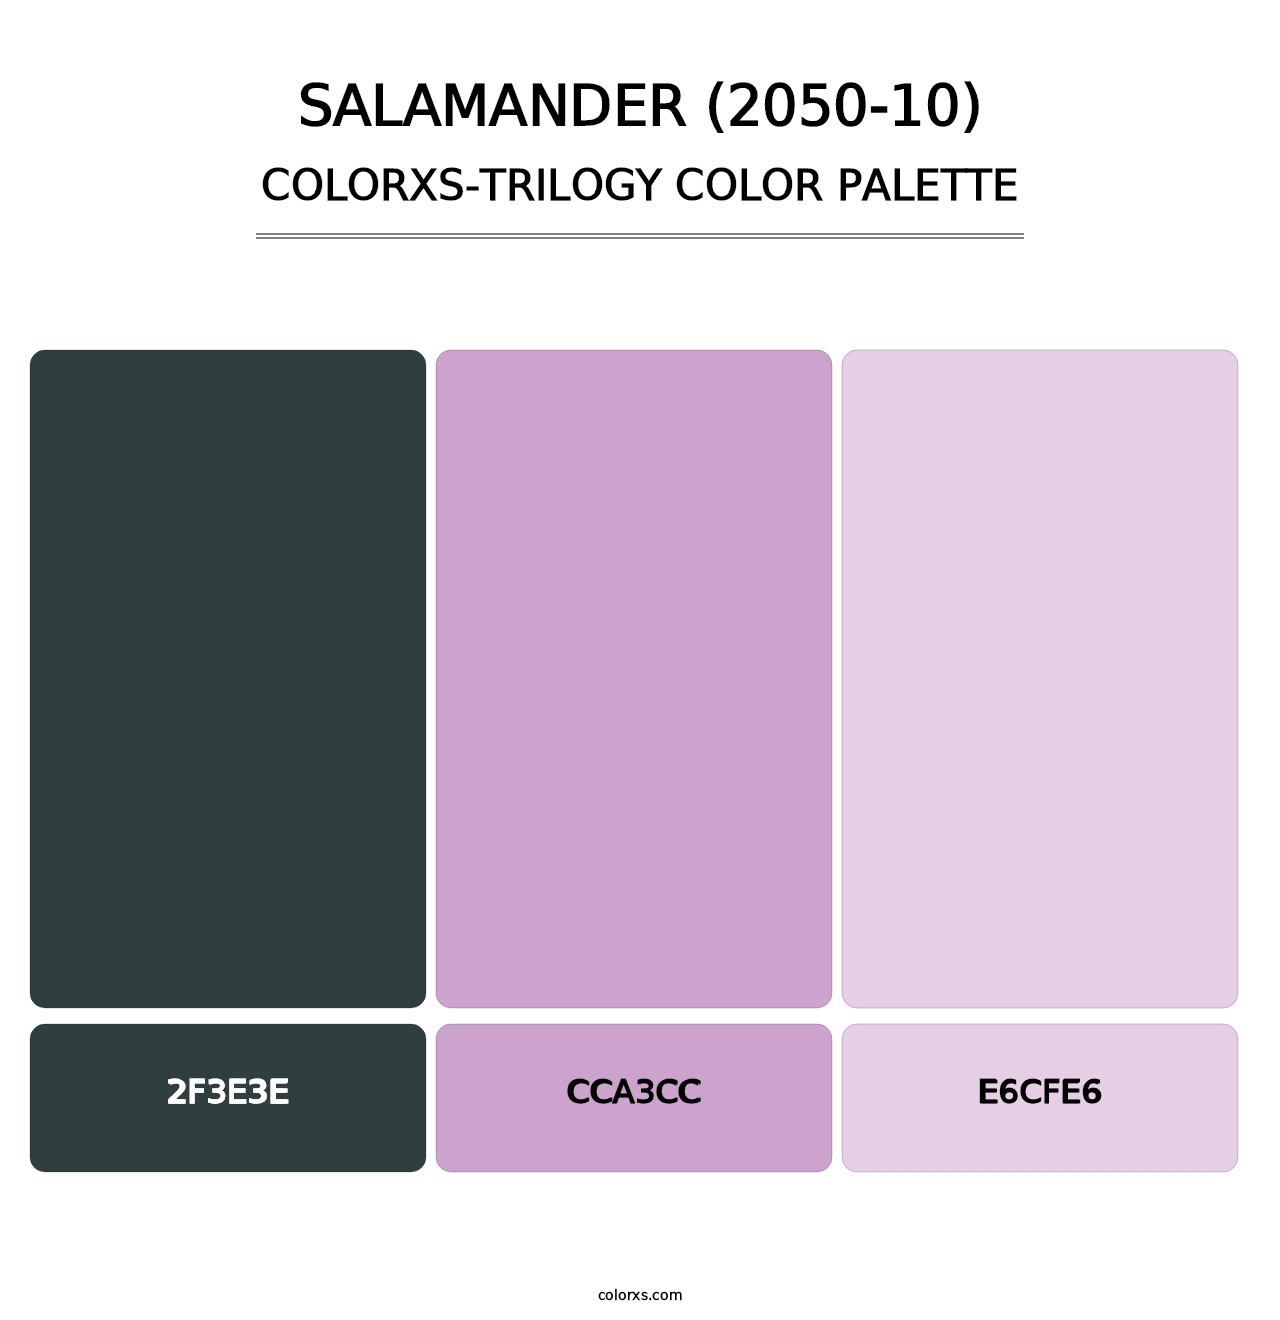 Salamander (2050-10) - Colorxs Trilogy Palette